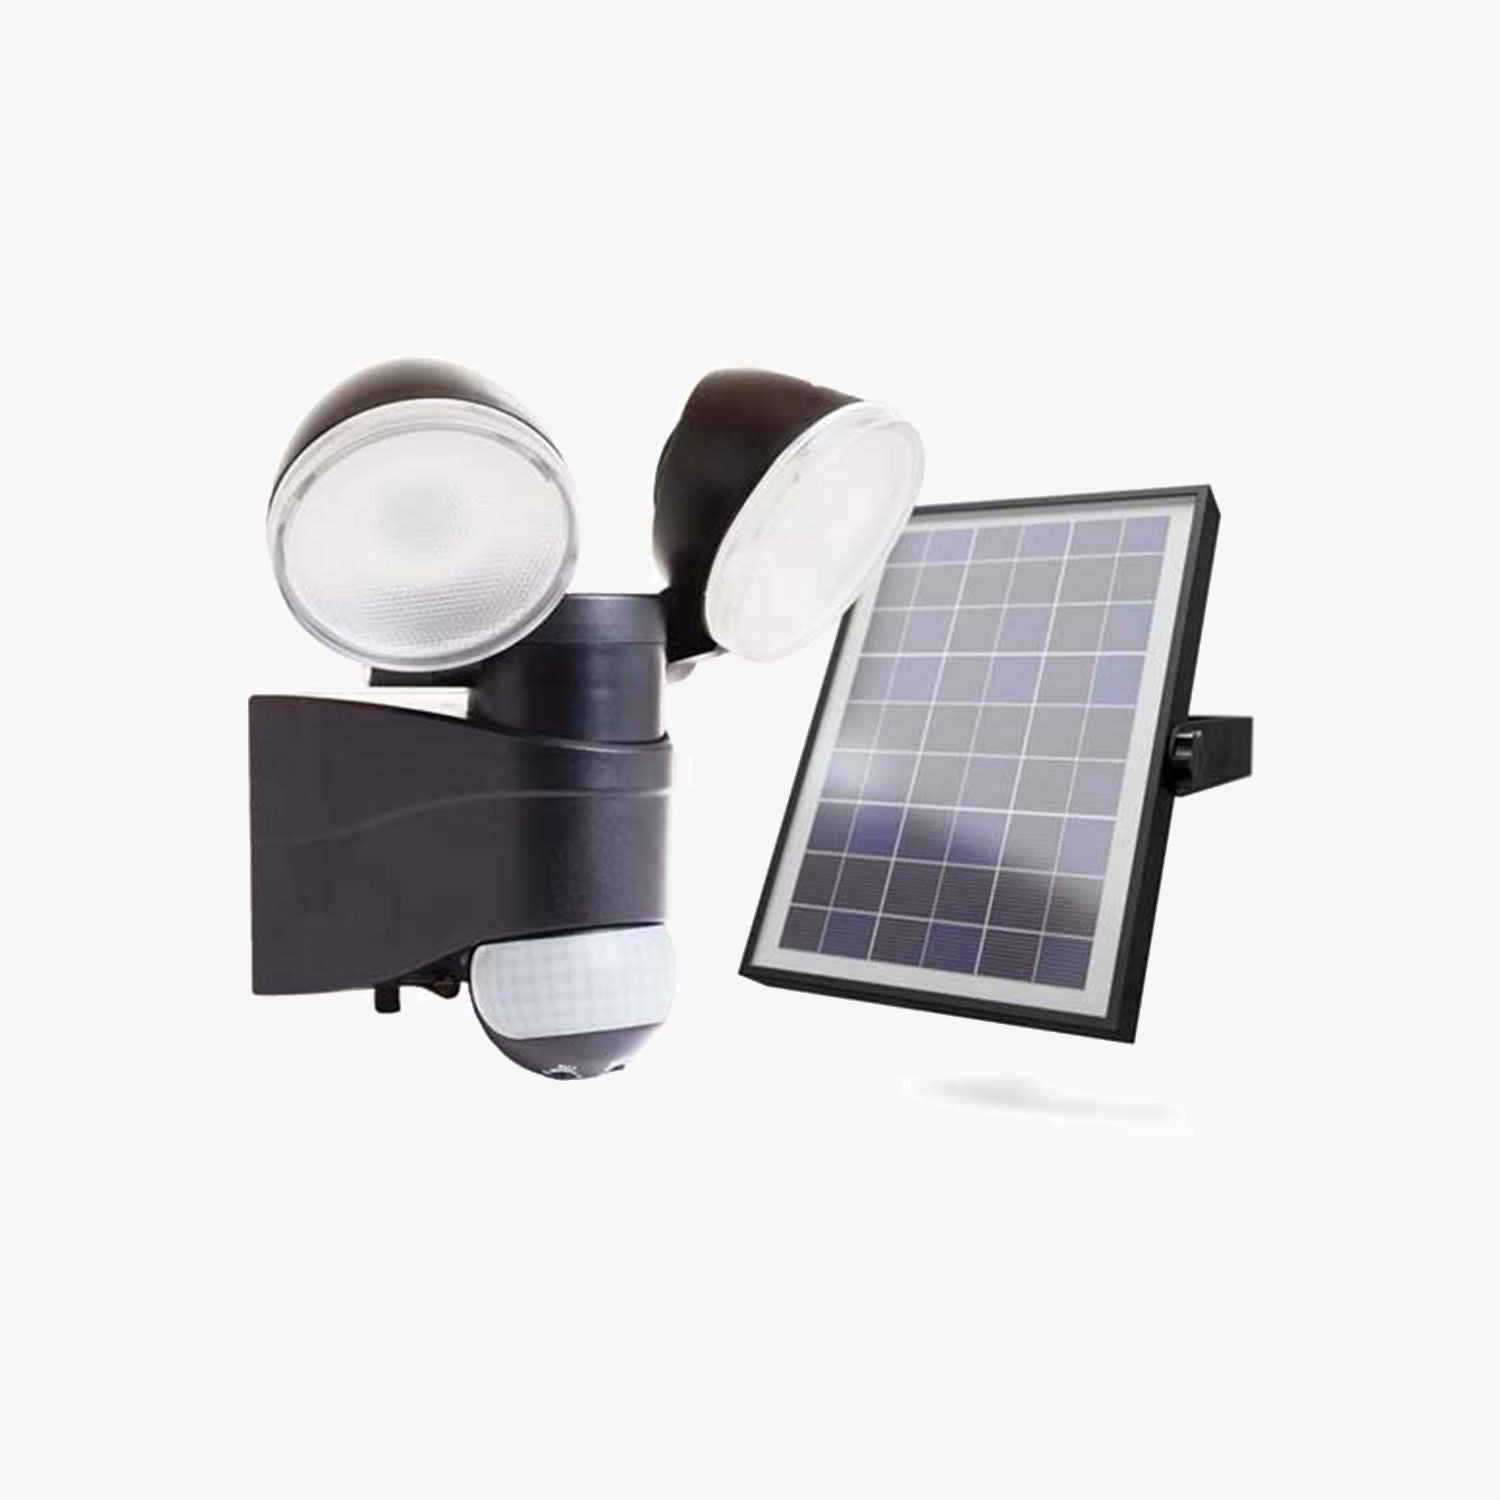 Lámpara LED de sobreponer en muro con panel solar y sensor de movimiento 12W, Modelo MS-7112.N65 Dekor